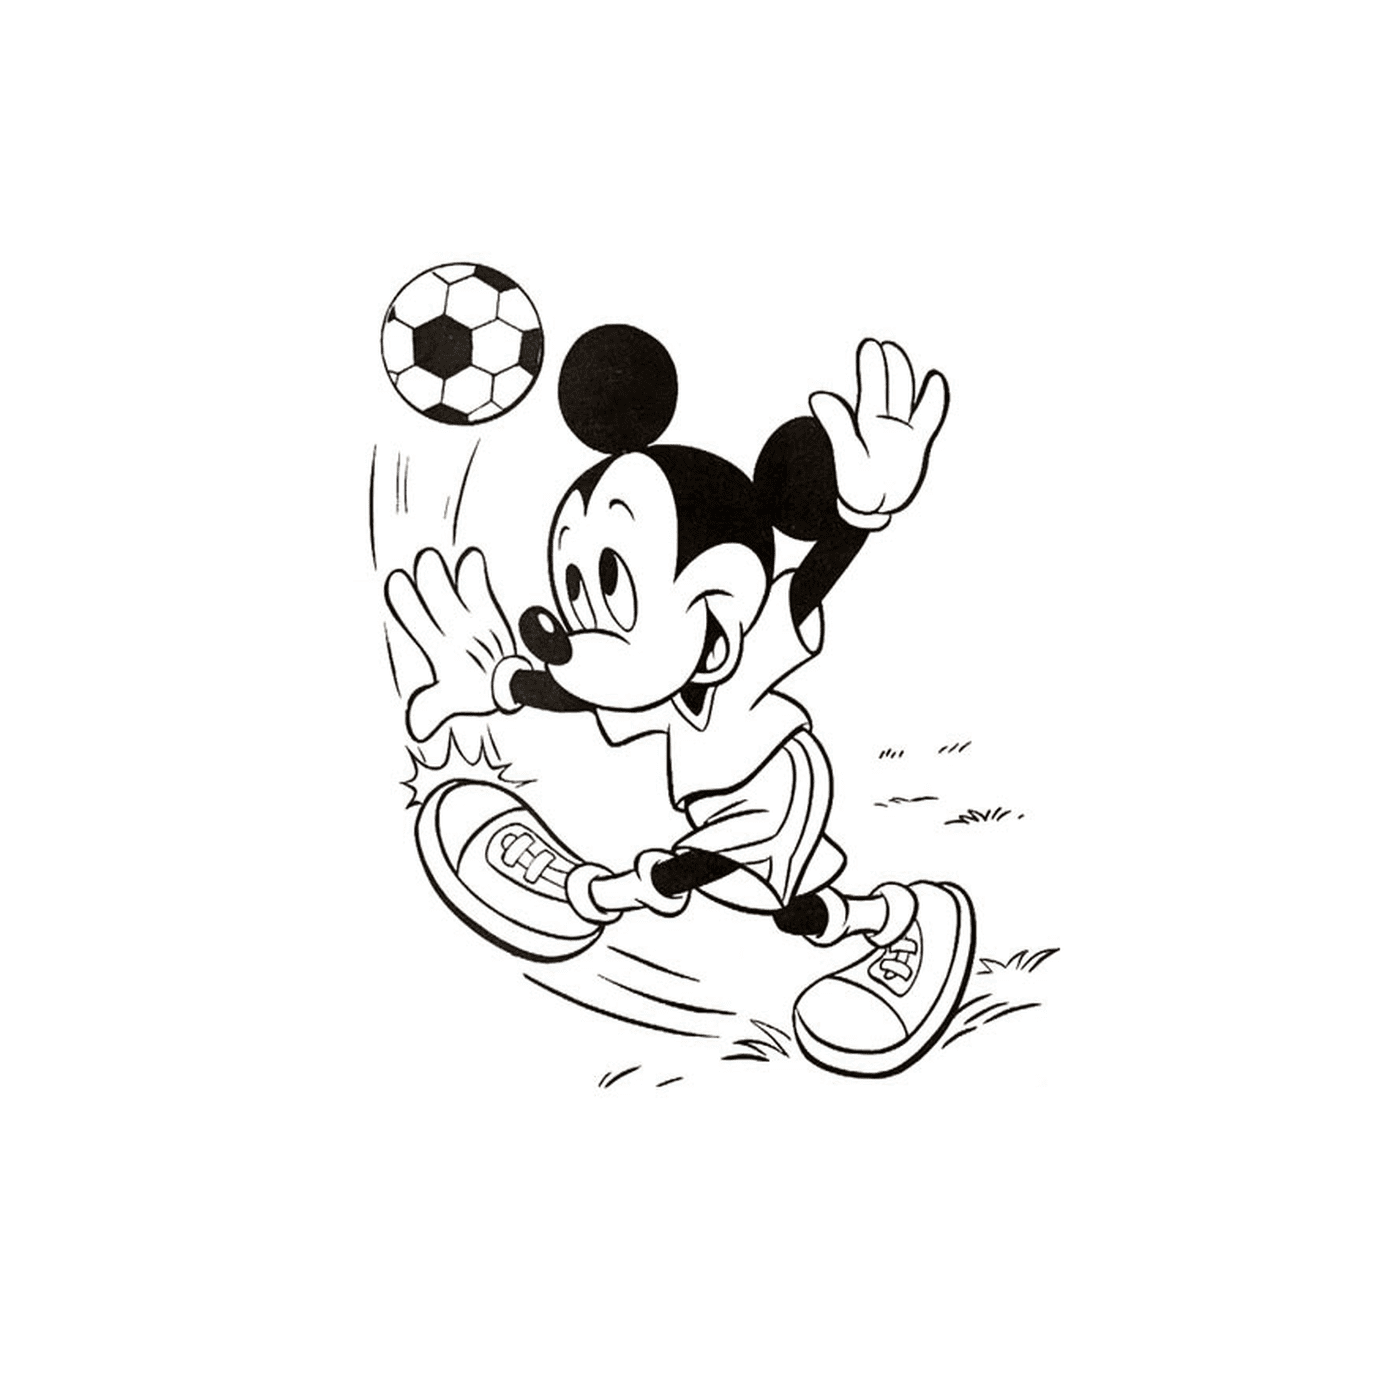  Mickey juega al fútbol 